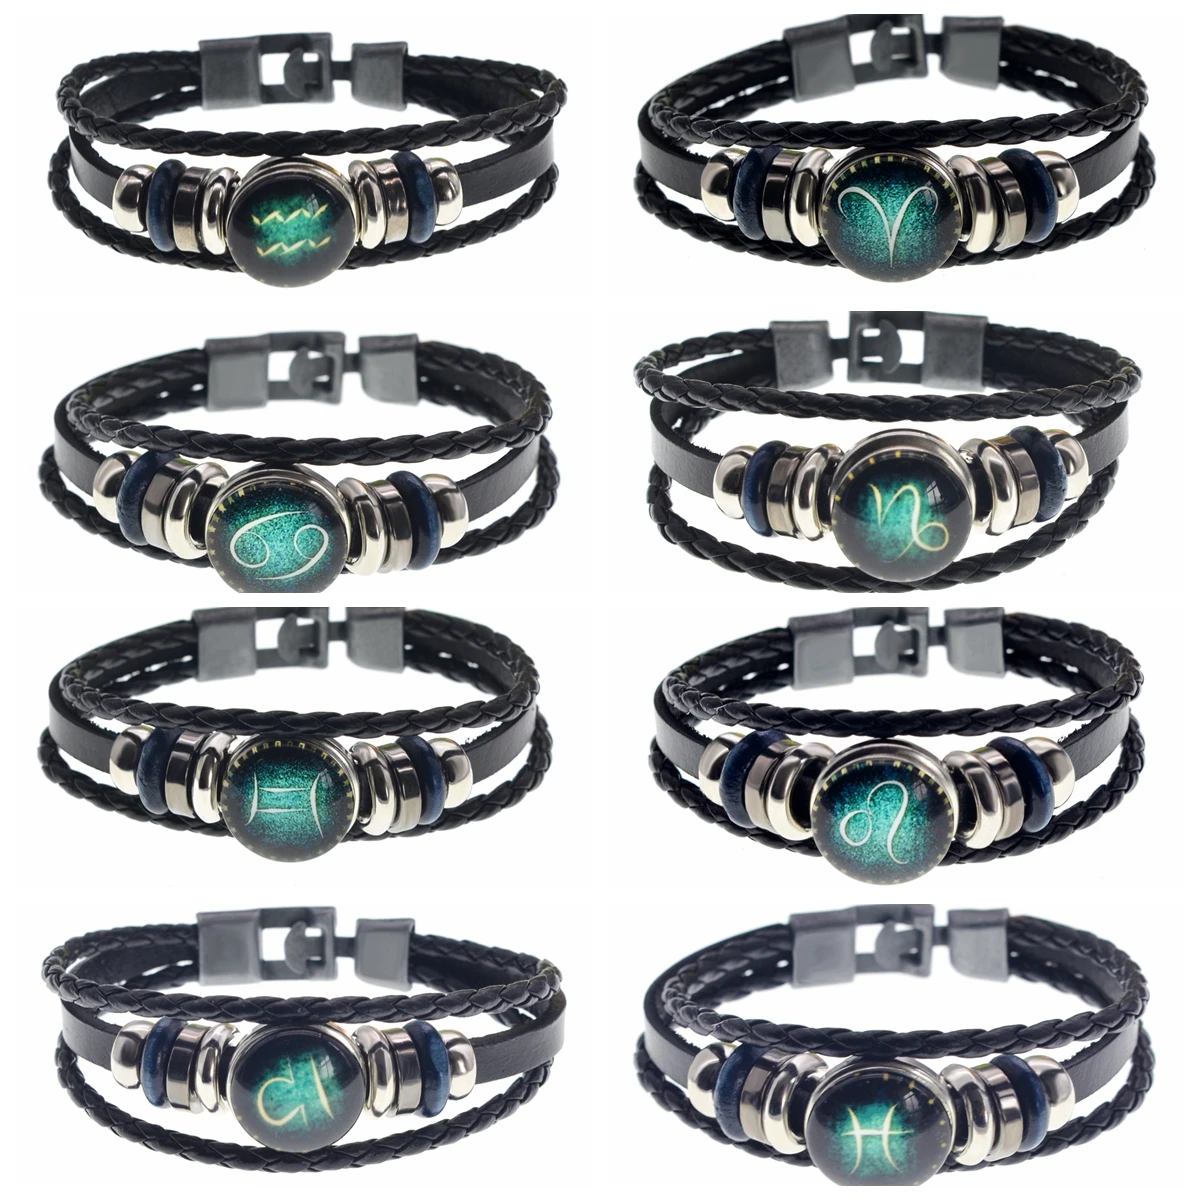 Virgo/Sagittarius/Aquarius/Scorpio/Libra/Capricorn 12 Constellation Bracelets Men Women Braided Leather Bracelet & Bangles